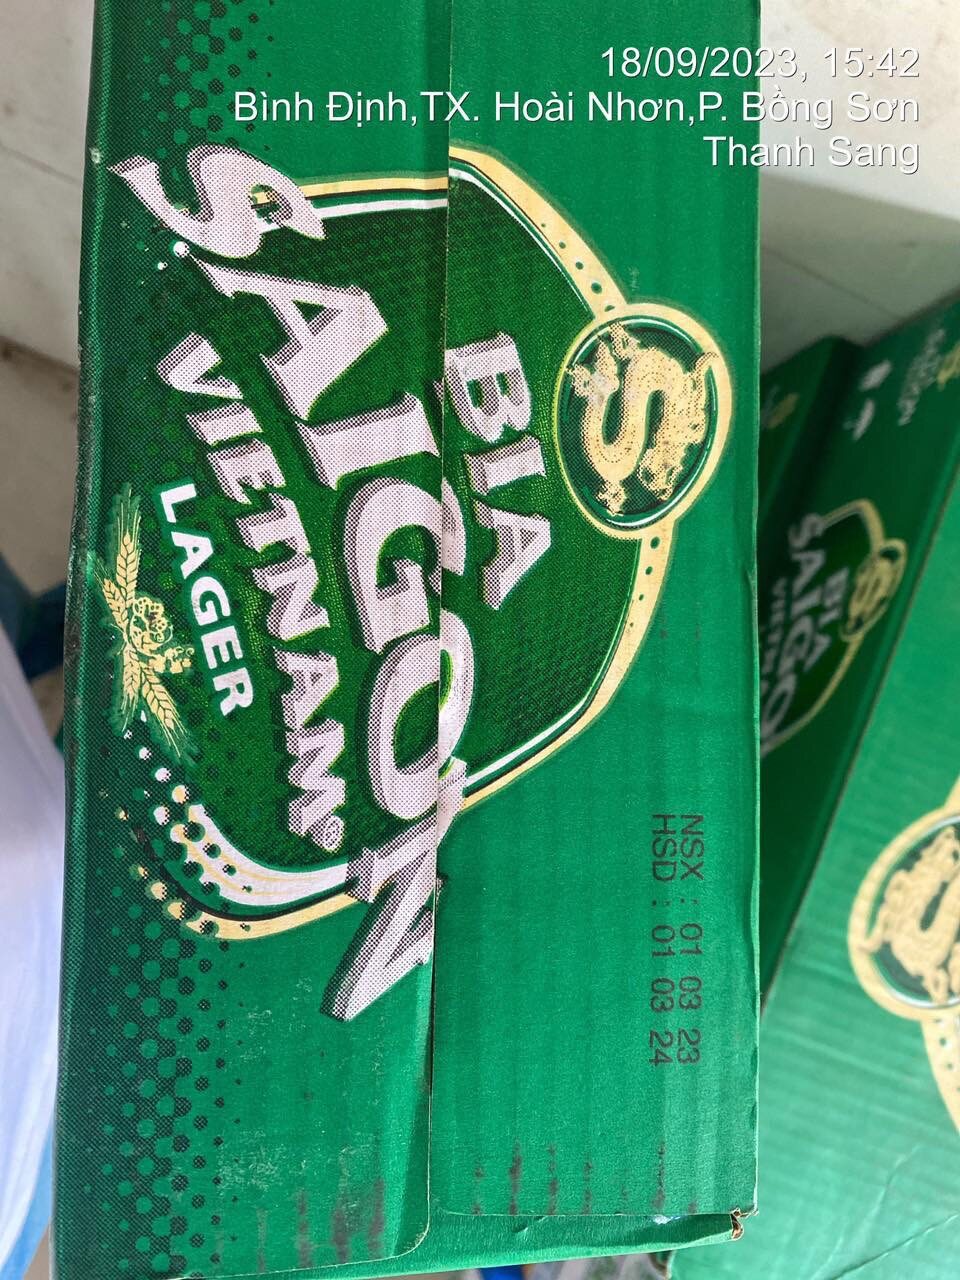 Ngày 16/3/2023, Tòa án nhân dân tỉnh Bà Rịa - Vũng Tàu đã tuyên phạt Công ty Cổ phần Tập đoàn Bia Sài Gòn Việt Nam và người đại diện số tiền trị giá 3,7 tỷ đồng với tội danh xâm phạm quyền sở hữu công nghiệp nhãn hiệu BIA SAIGON của SABECO đã được bảo hộ.